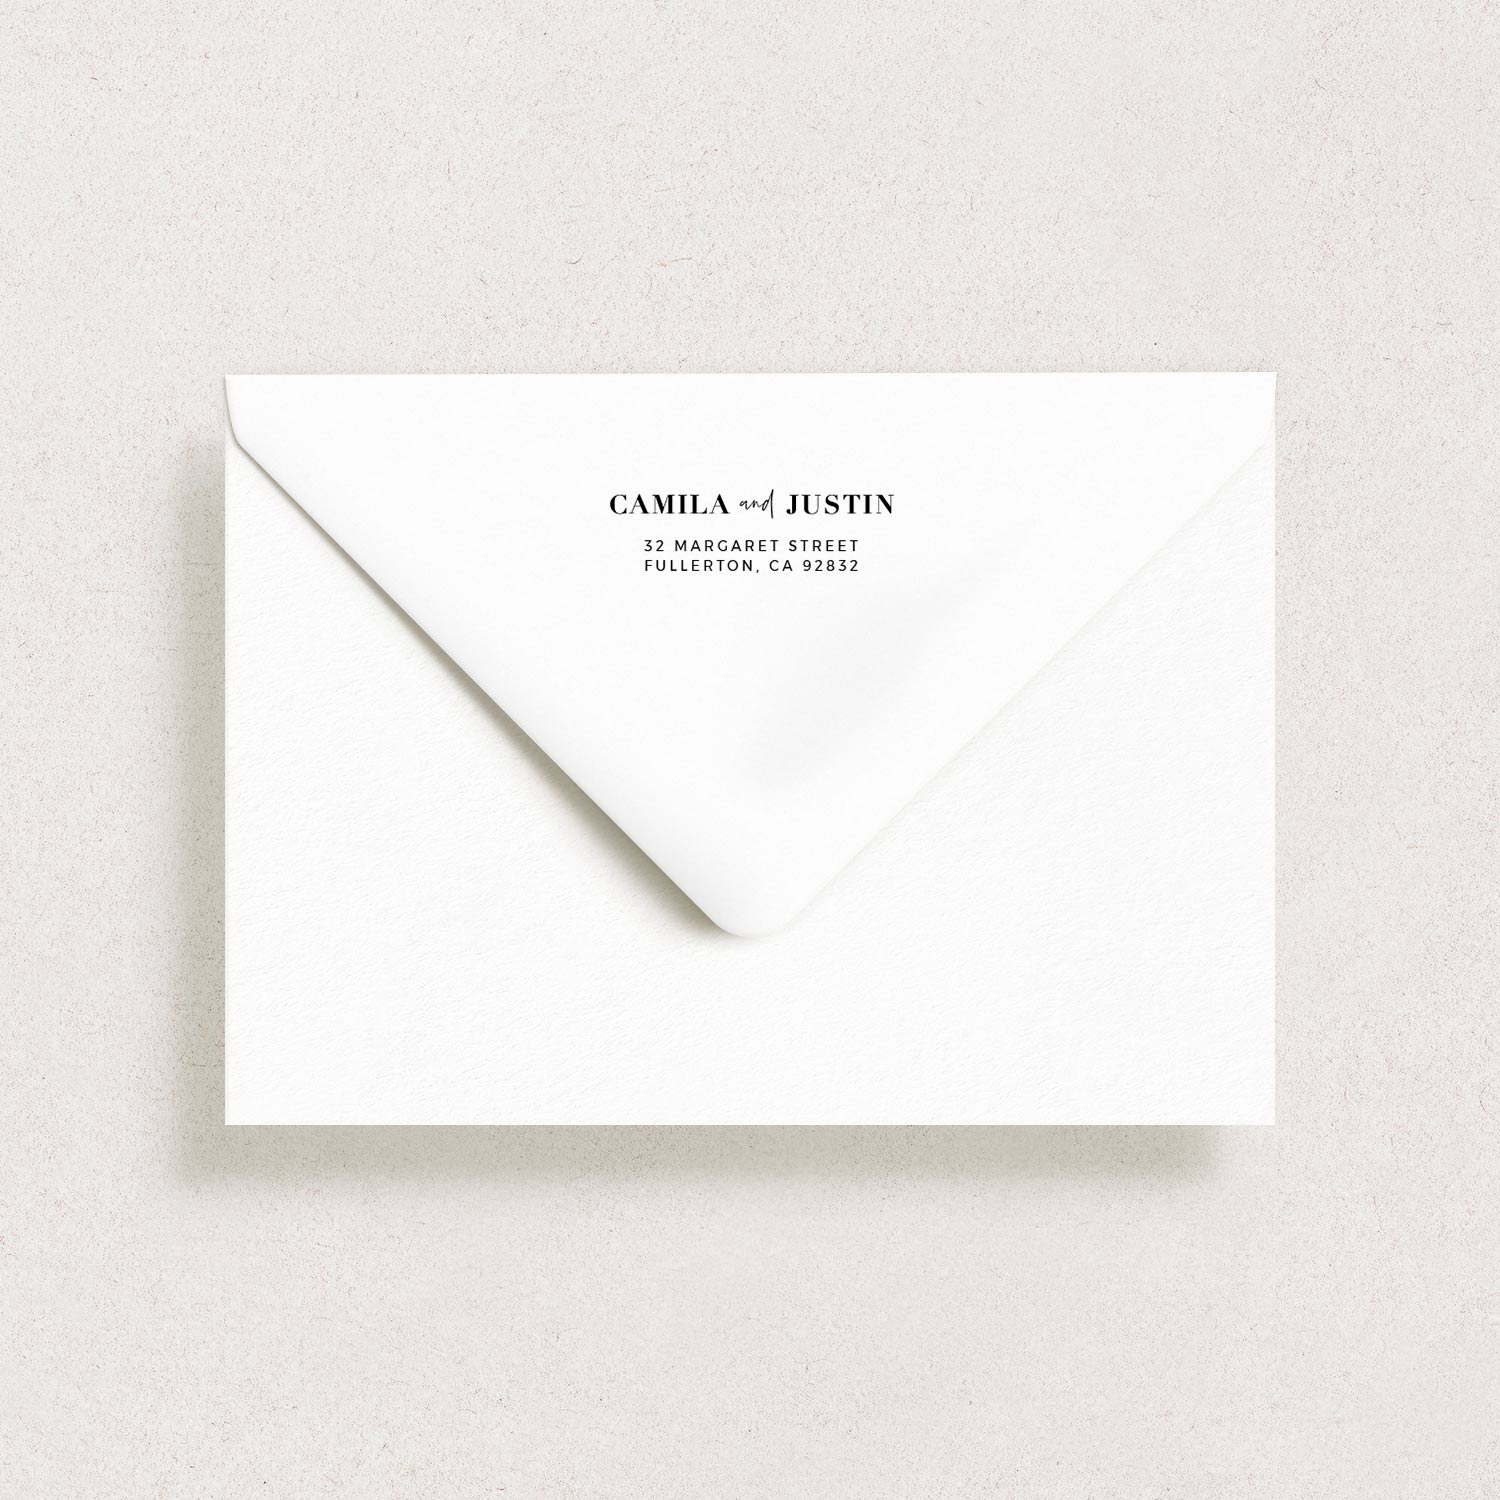 Return Envelope Address, WEEKEND IN PARIS